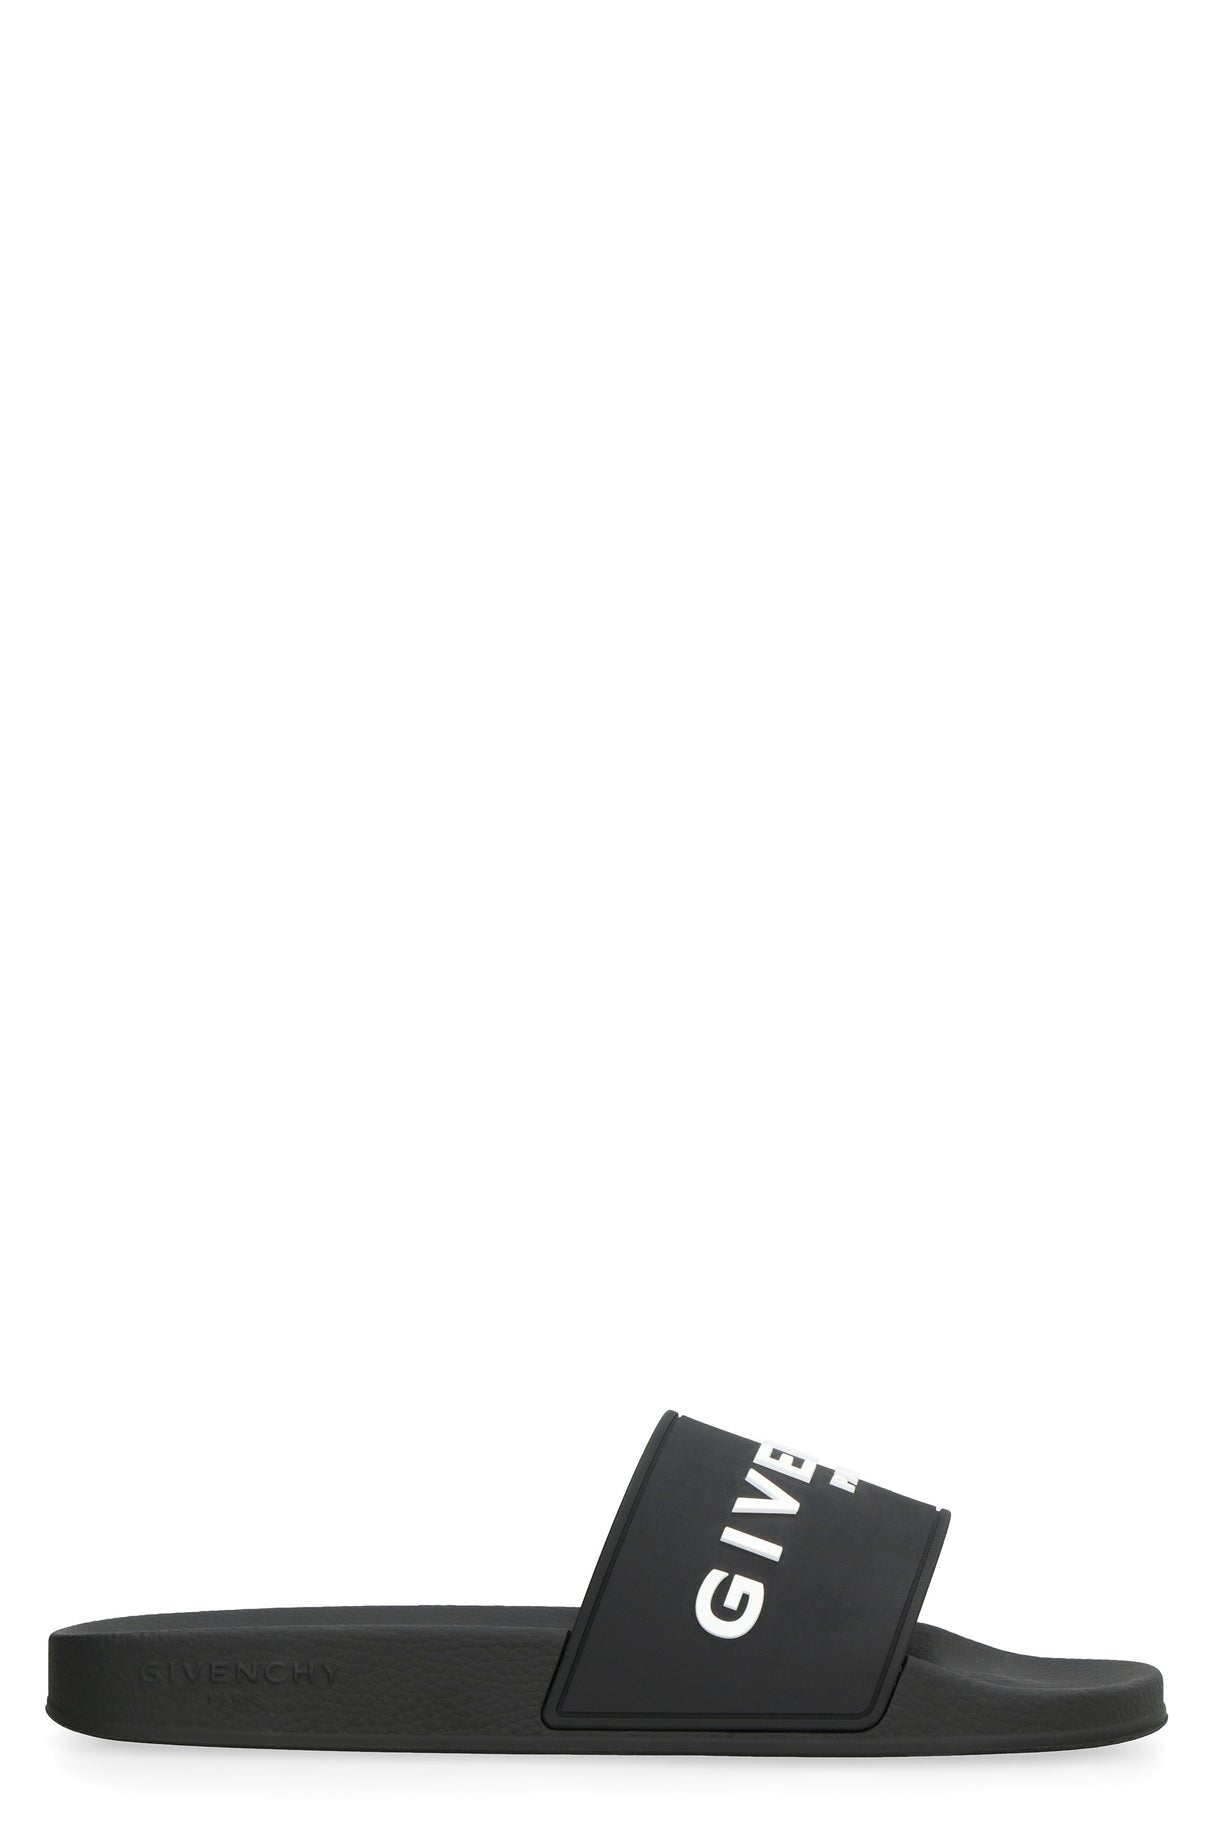 GIVENCHY Black Slides with Contrasting Logo Lettering for Men